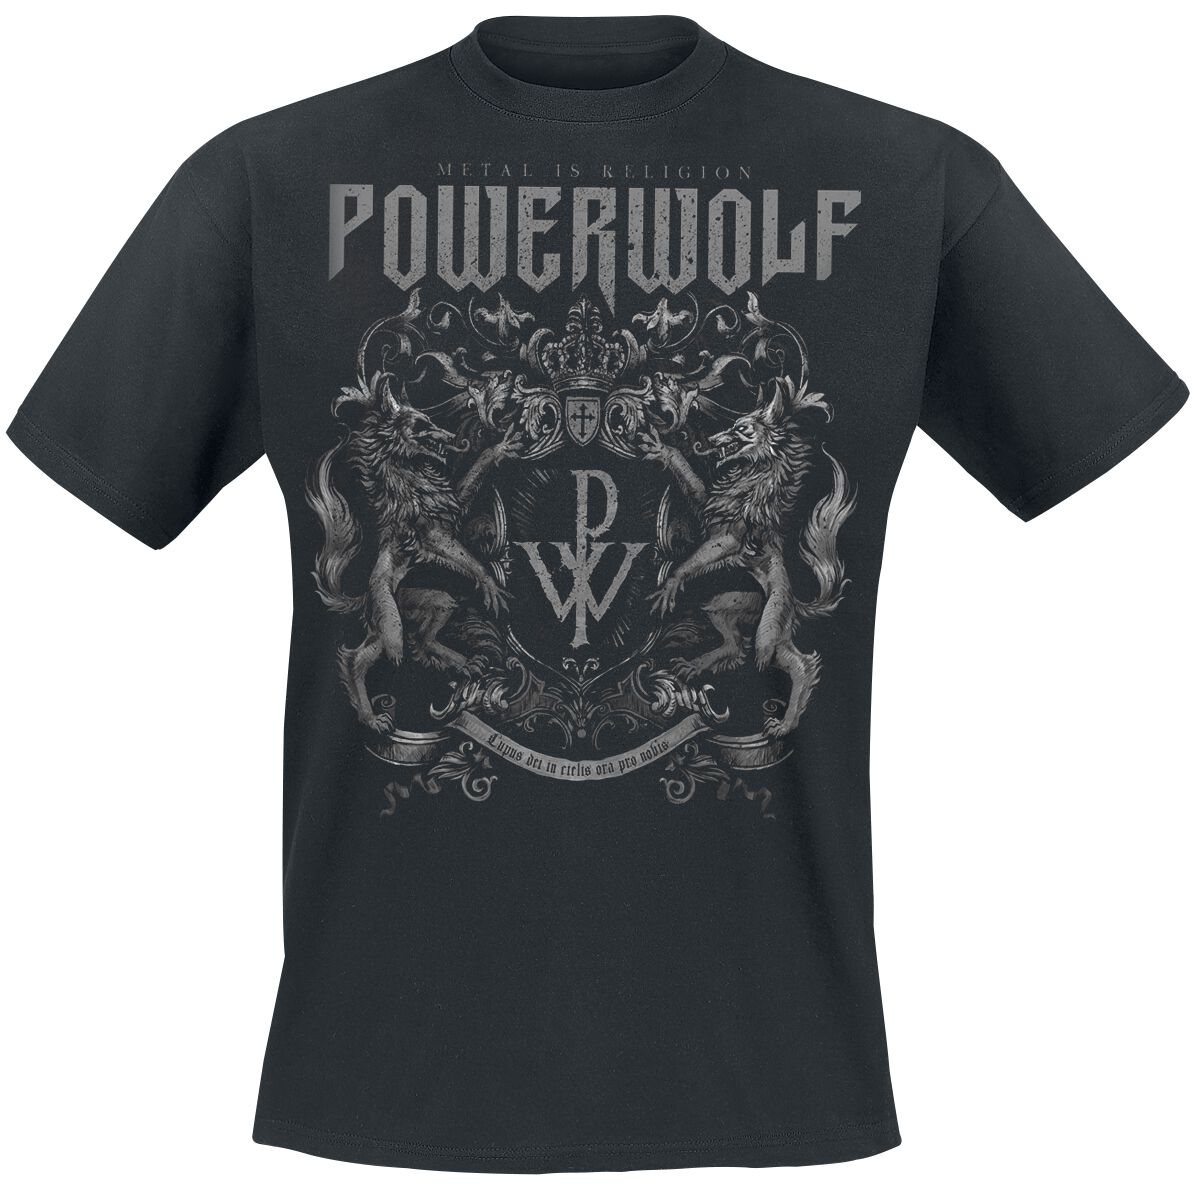 Powerwolf T-Shirt - Crest - Metal Is Religion - S bis 3XL - für Männer - Größe M - schwarz  - Lizenziertes Merchandise!